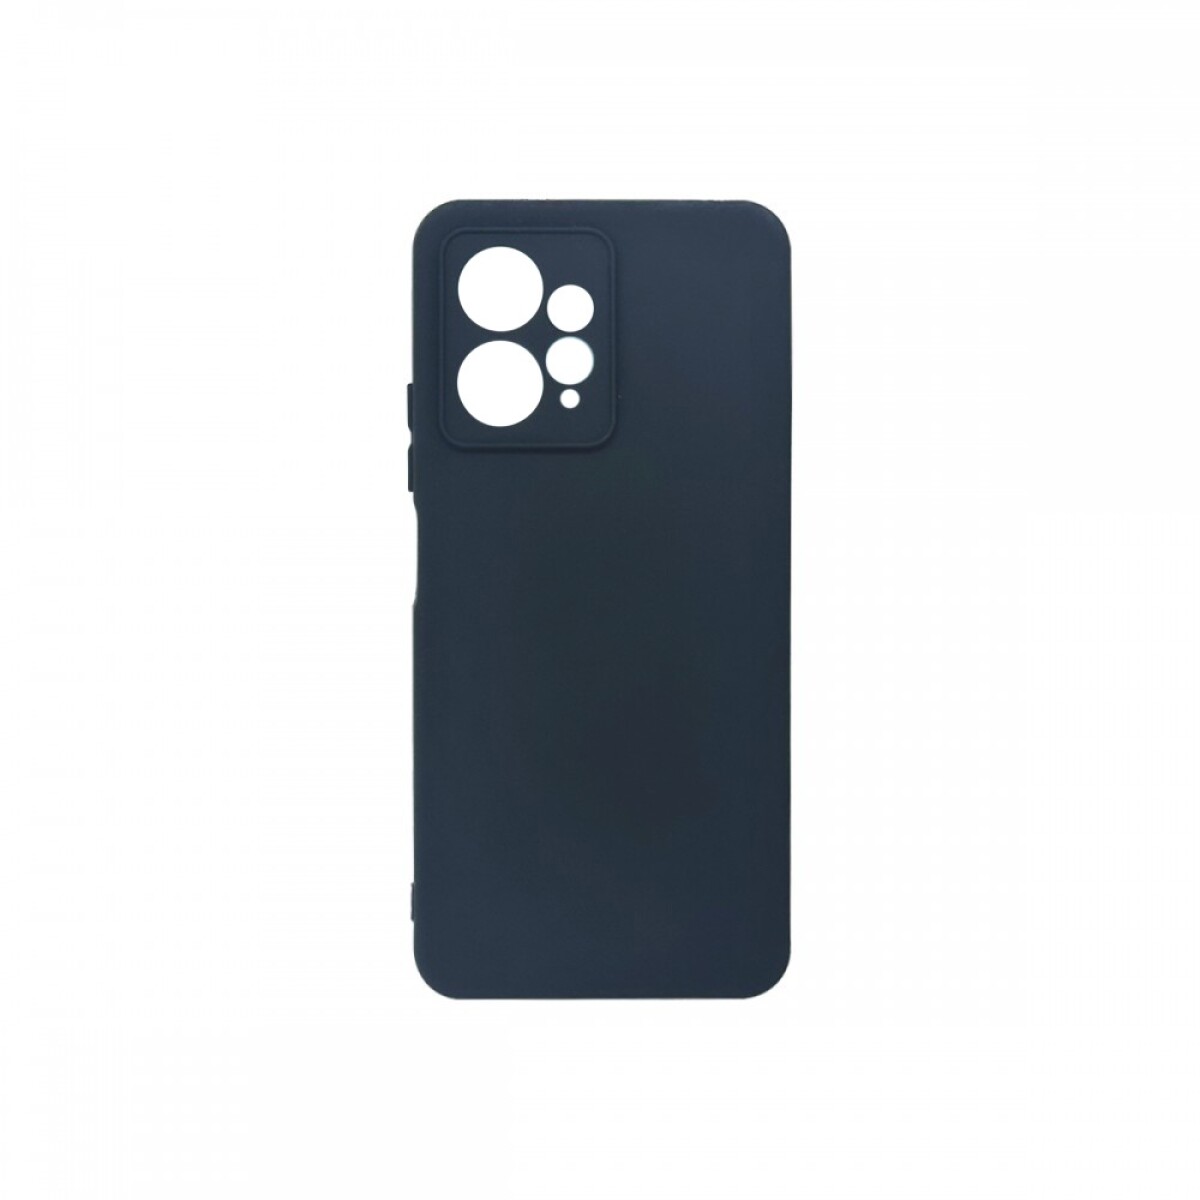 Protector Case de Silicona para Xiaomi Redmi Note 12 - Negro 